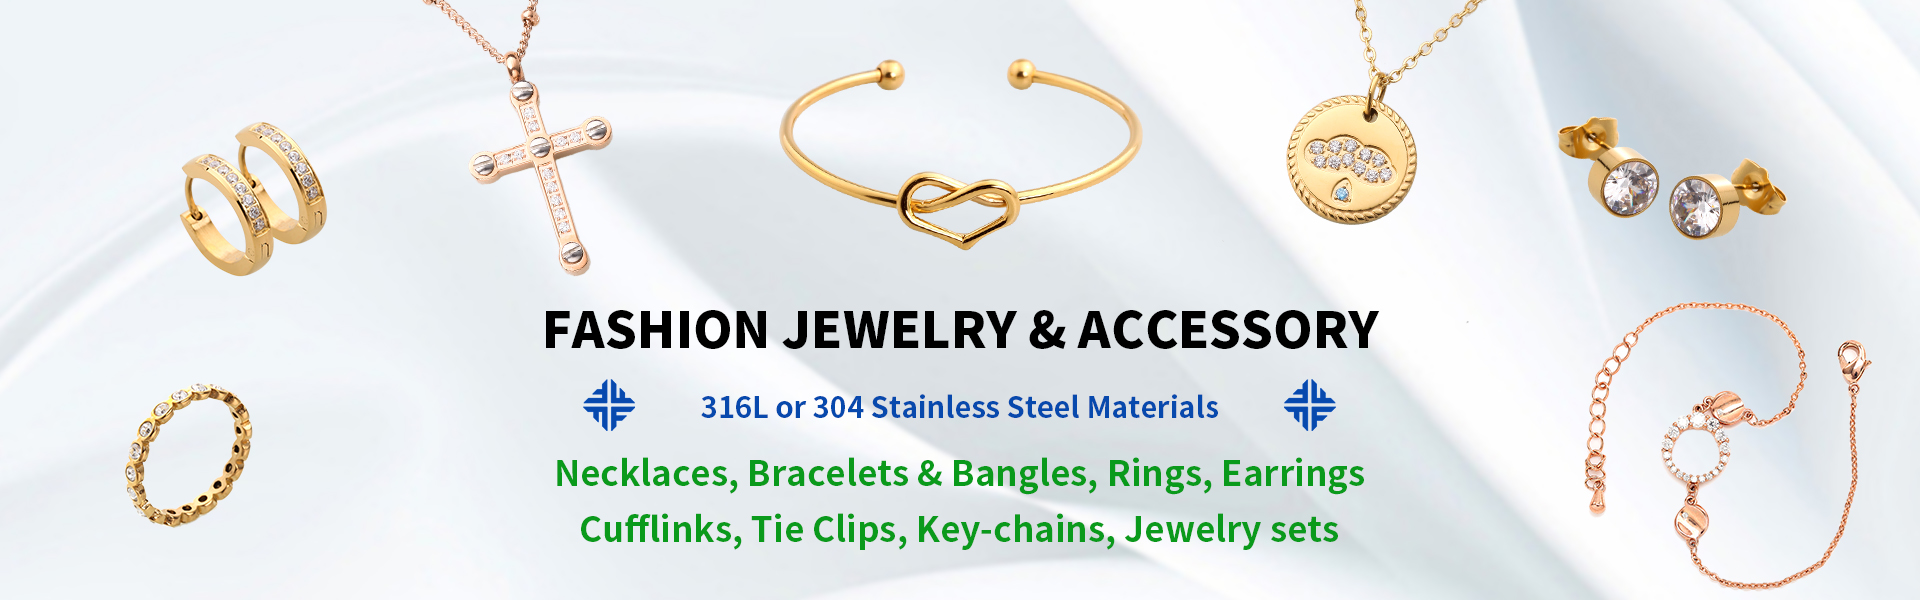 đồ trang sức bằng thép không gỉ, đồ trang sức và phụ kiện thời trang, nhà bán buôn và nhà sản xuất đồ trang sức,Dongguan Fullten Jewelry Co., Ltd